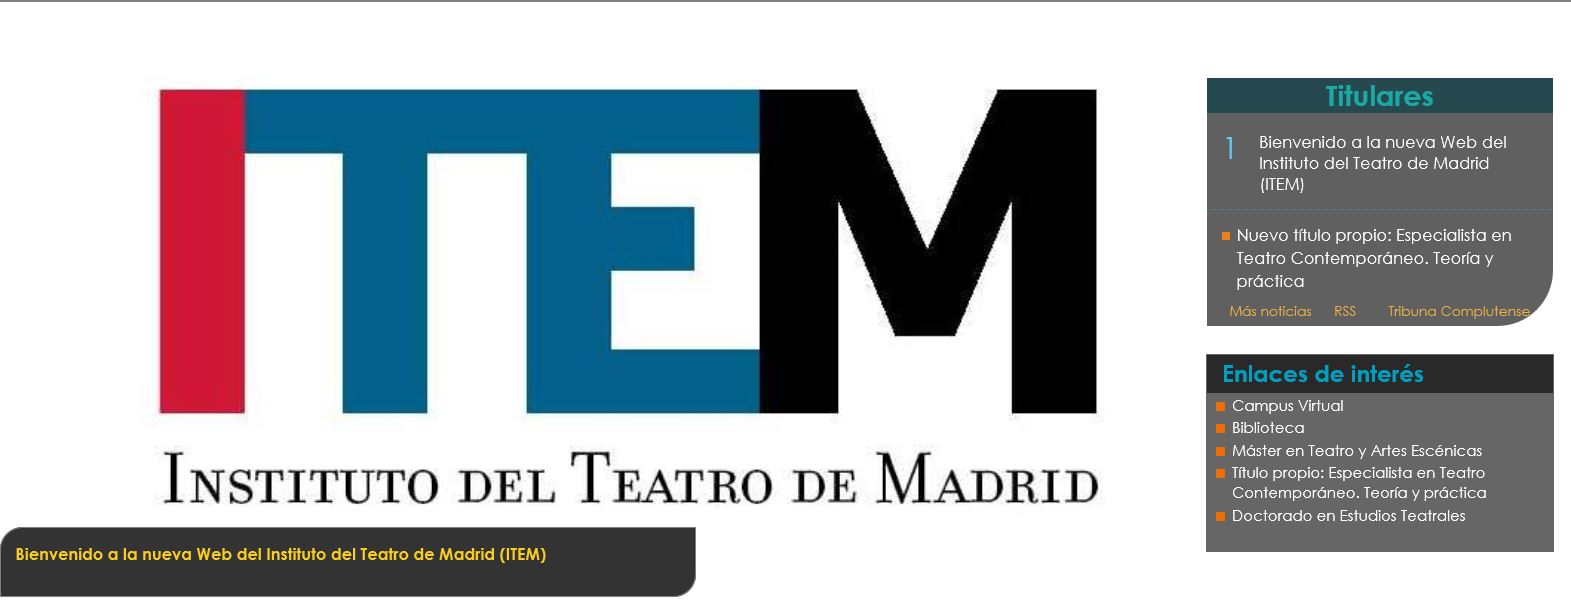 Instituto del Teatro de Madrid (ITEM) 